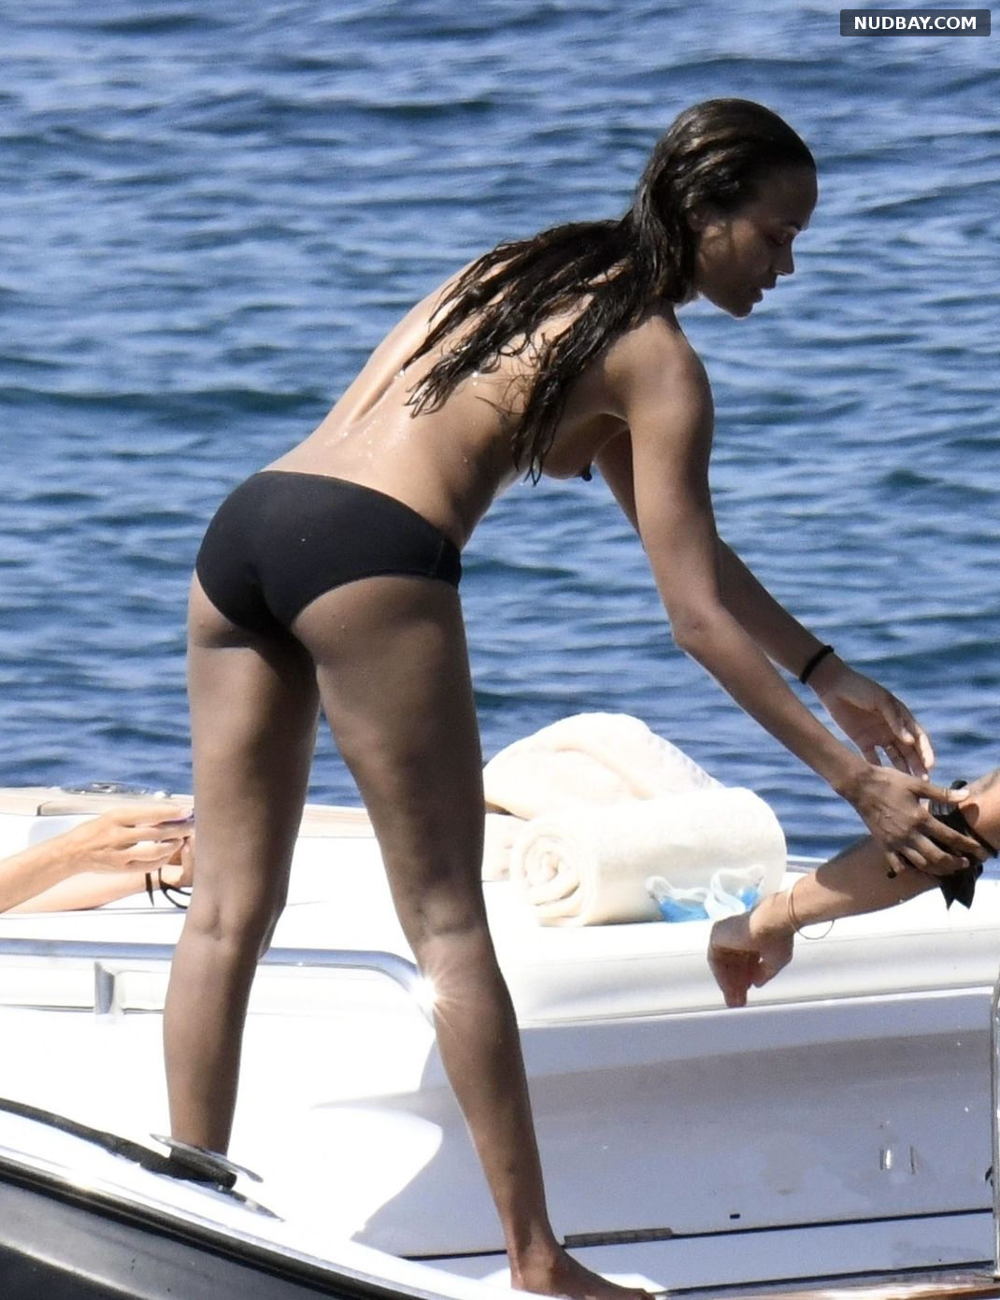 Zoe Saldana naked on yacht in Italy Aug 16 2021